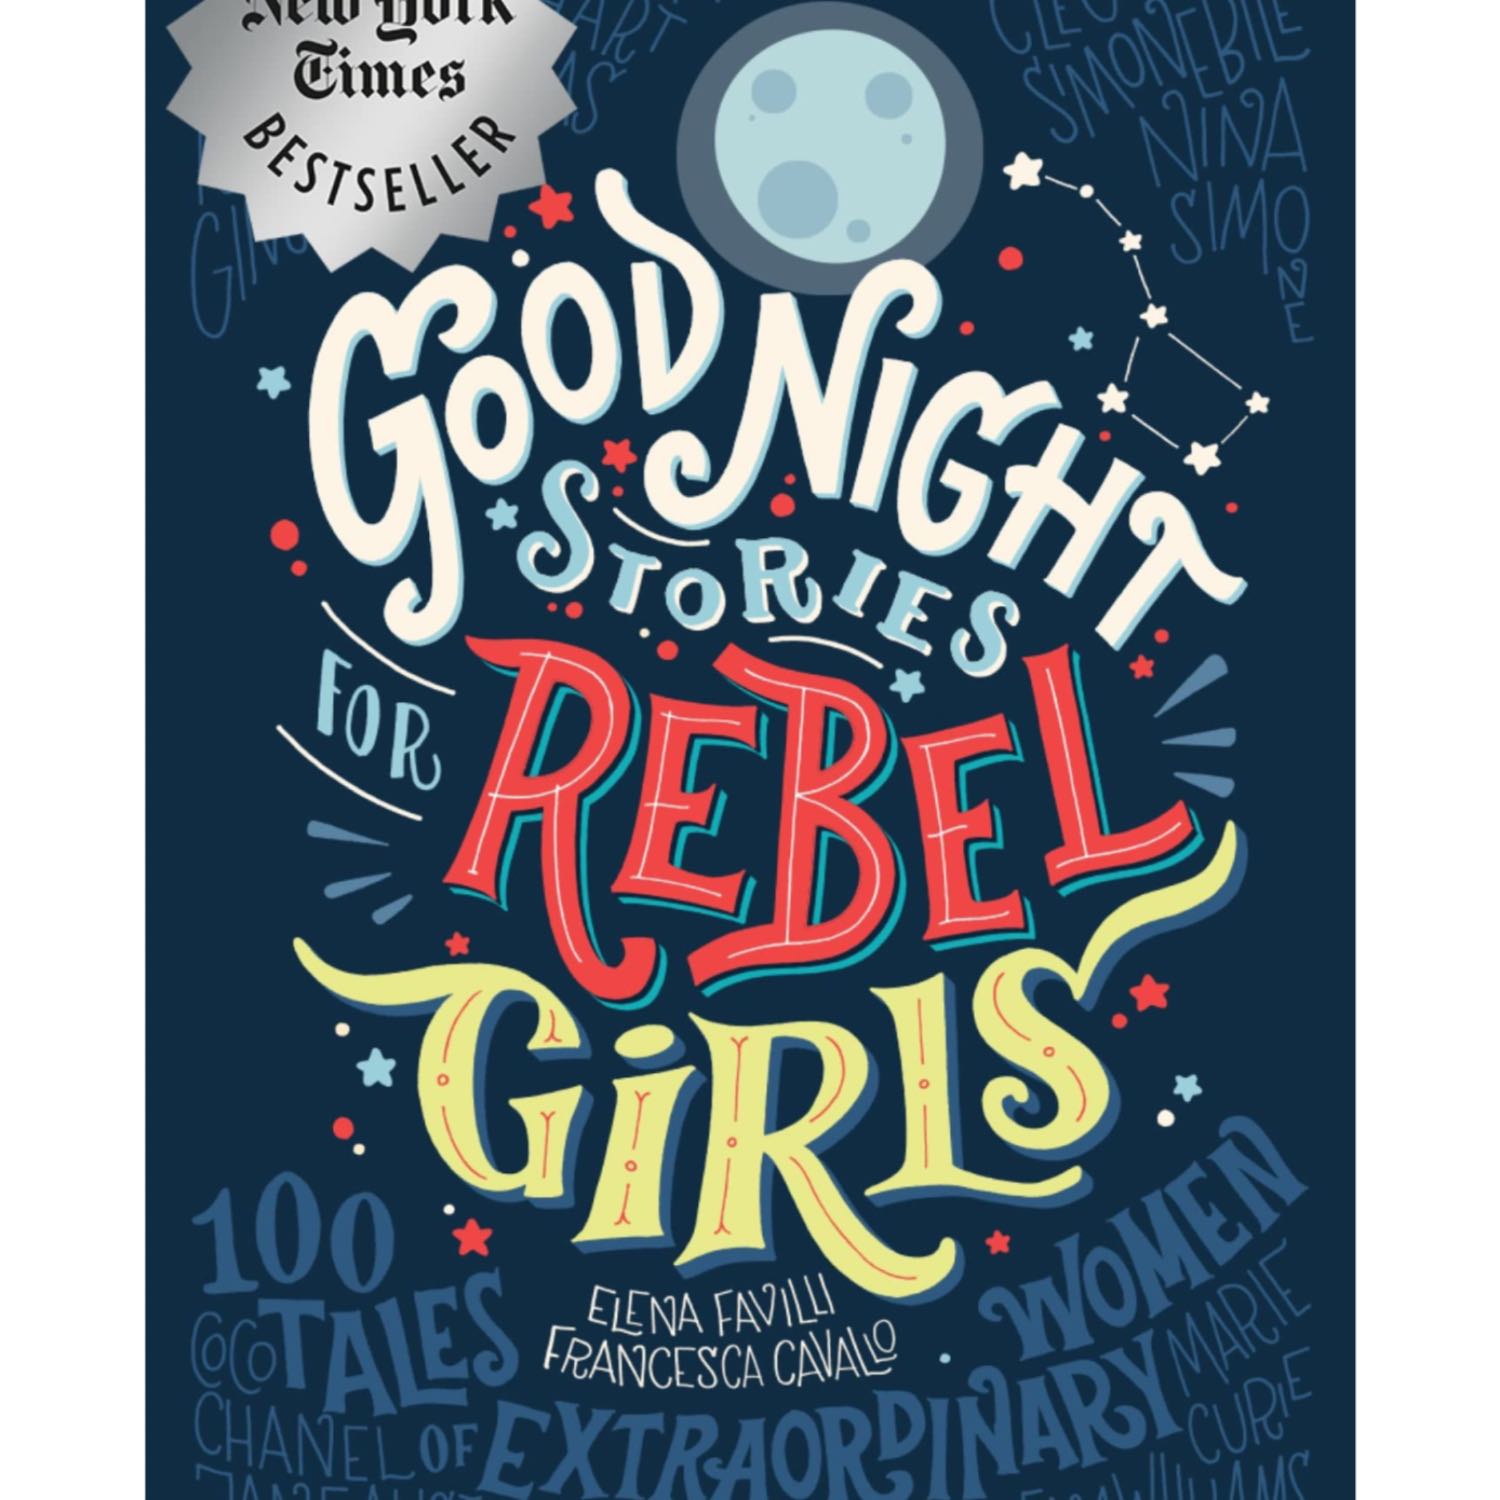 Goodnight Stories for Rebel Girls: Simone Biles